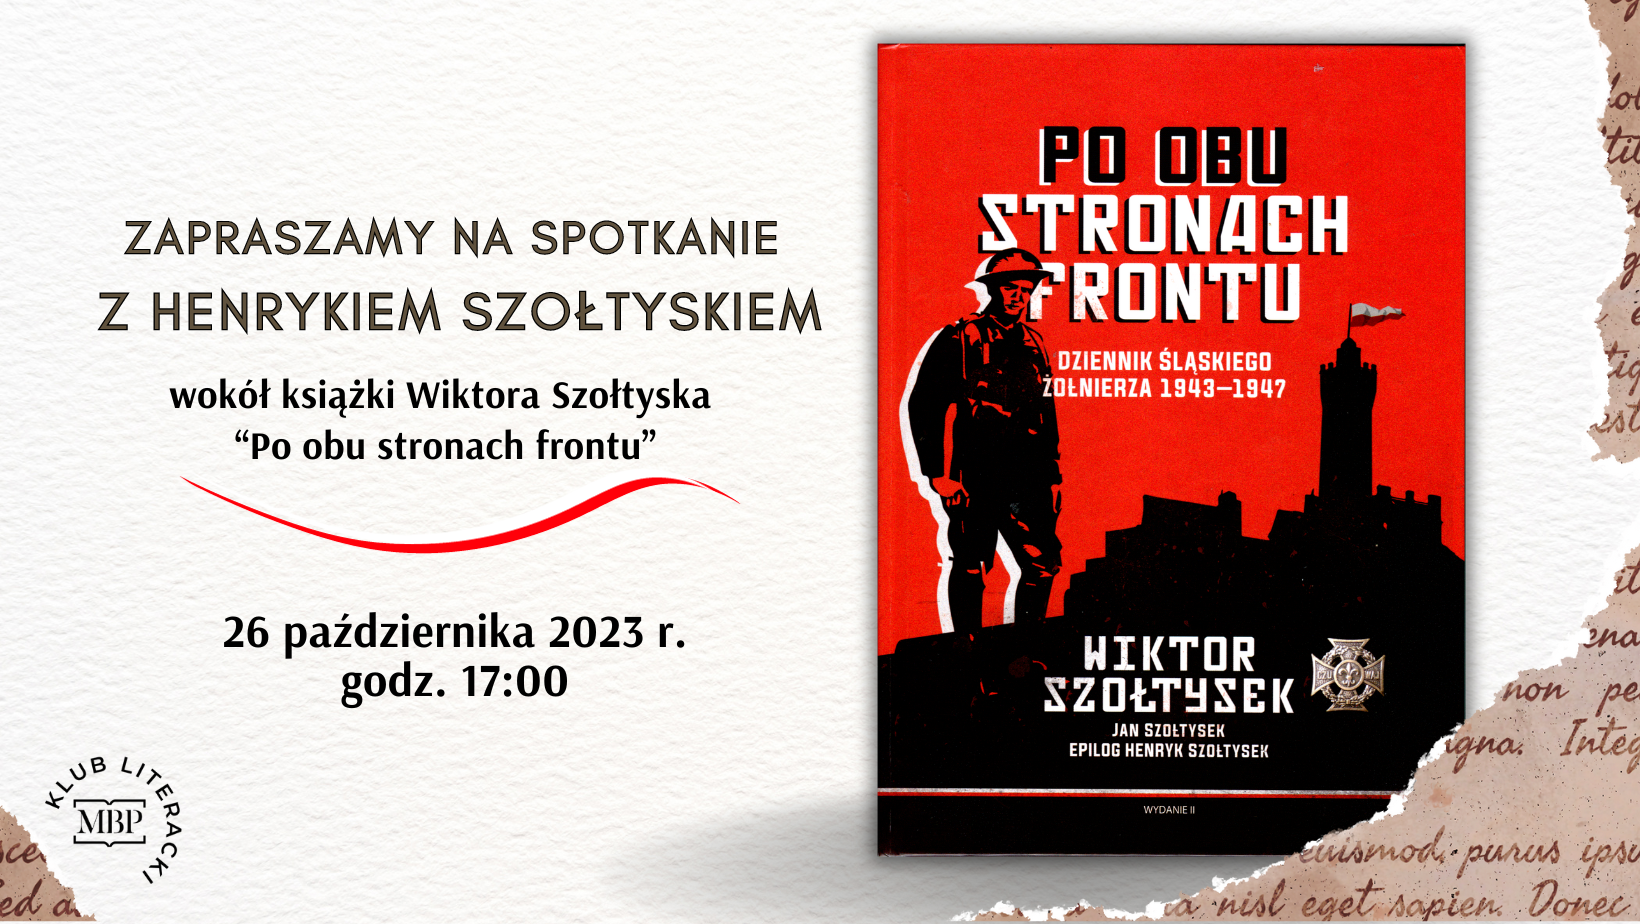 Informacja o spotkaniu z Henrykiem Szołtyskiem. Napis, okładka książki "po obu stronach frontu"